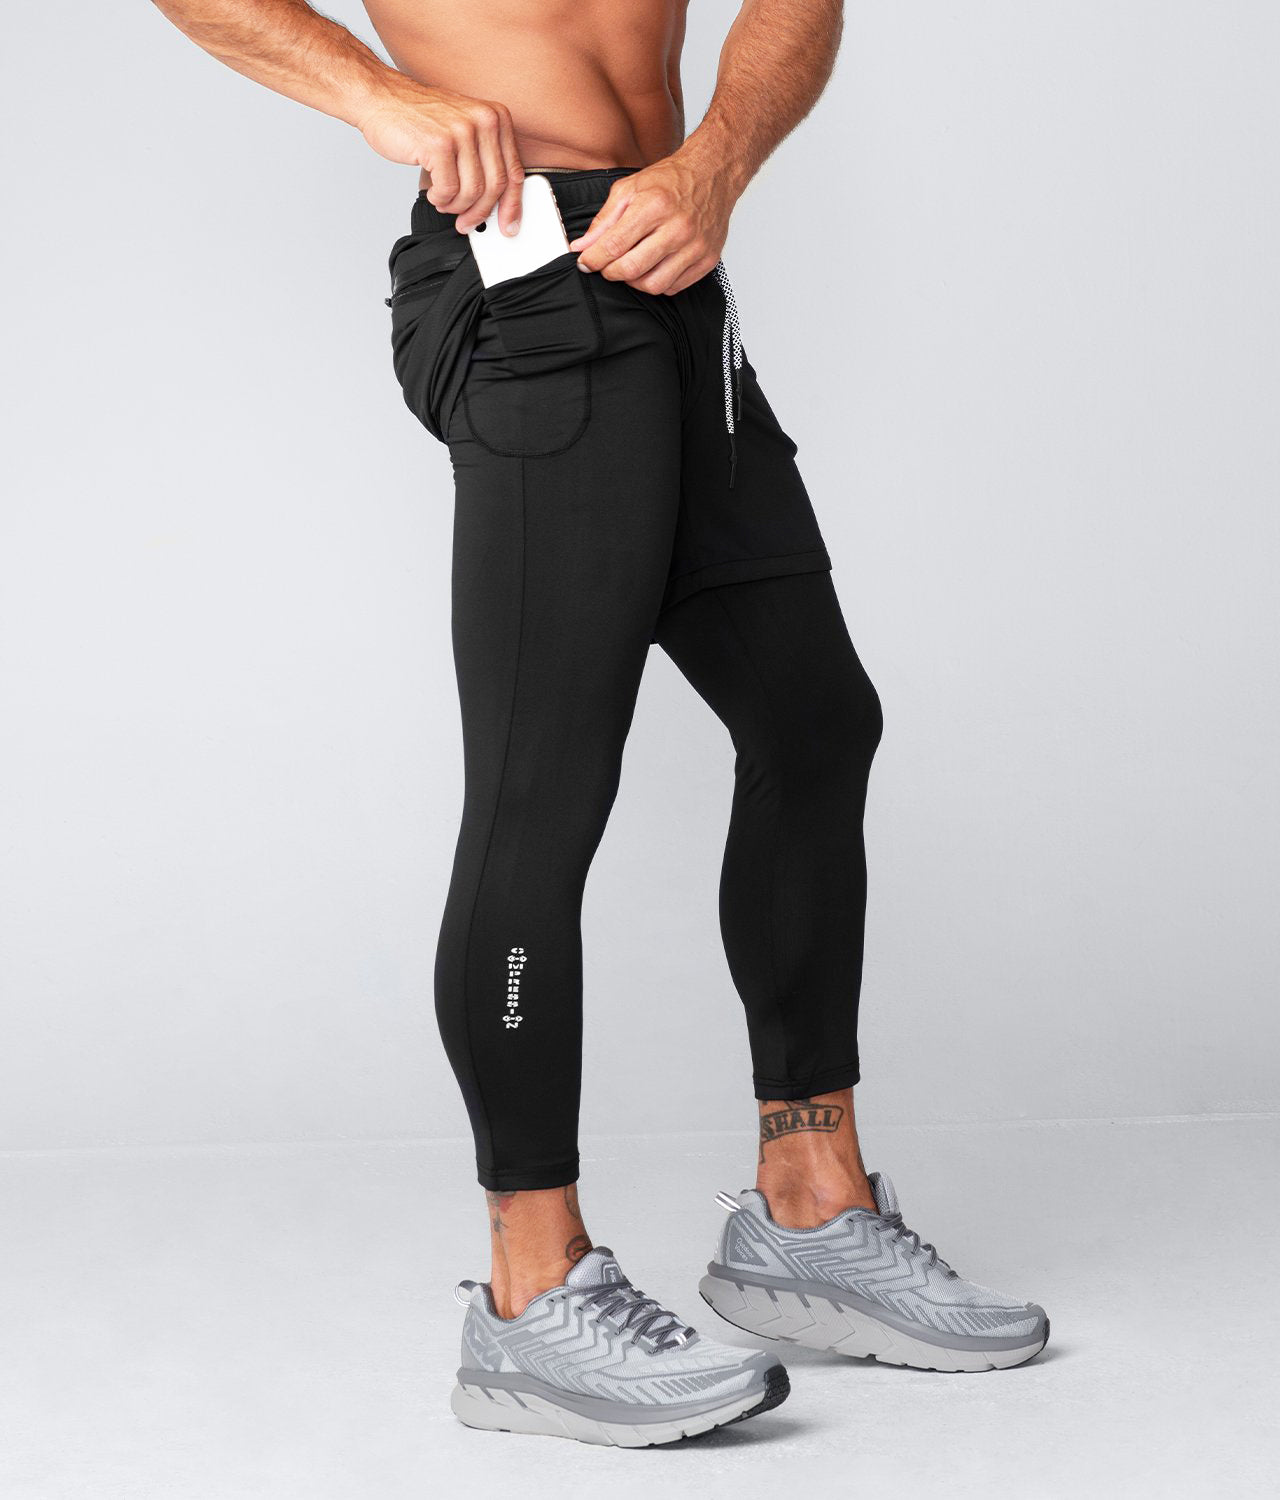 Men's Workout Joggers - Best Gym Workout Pants for Men - Born Tough